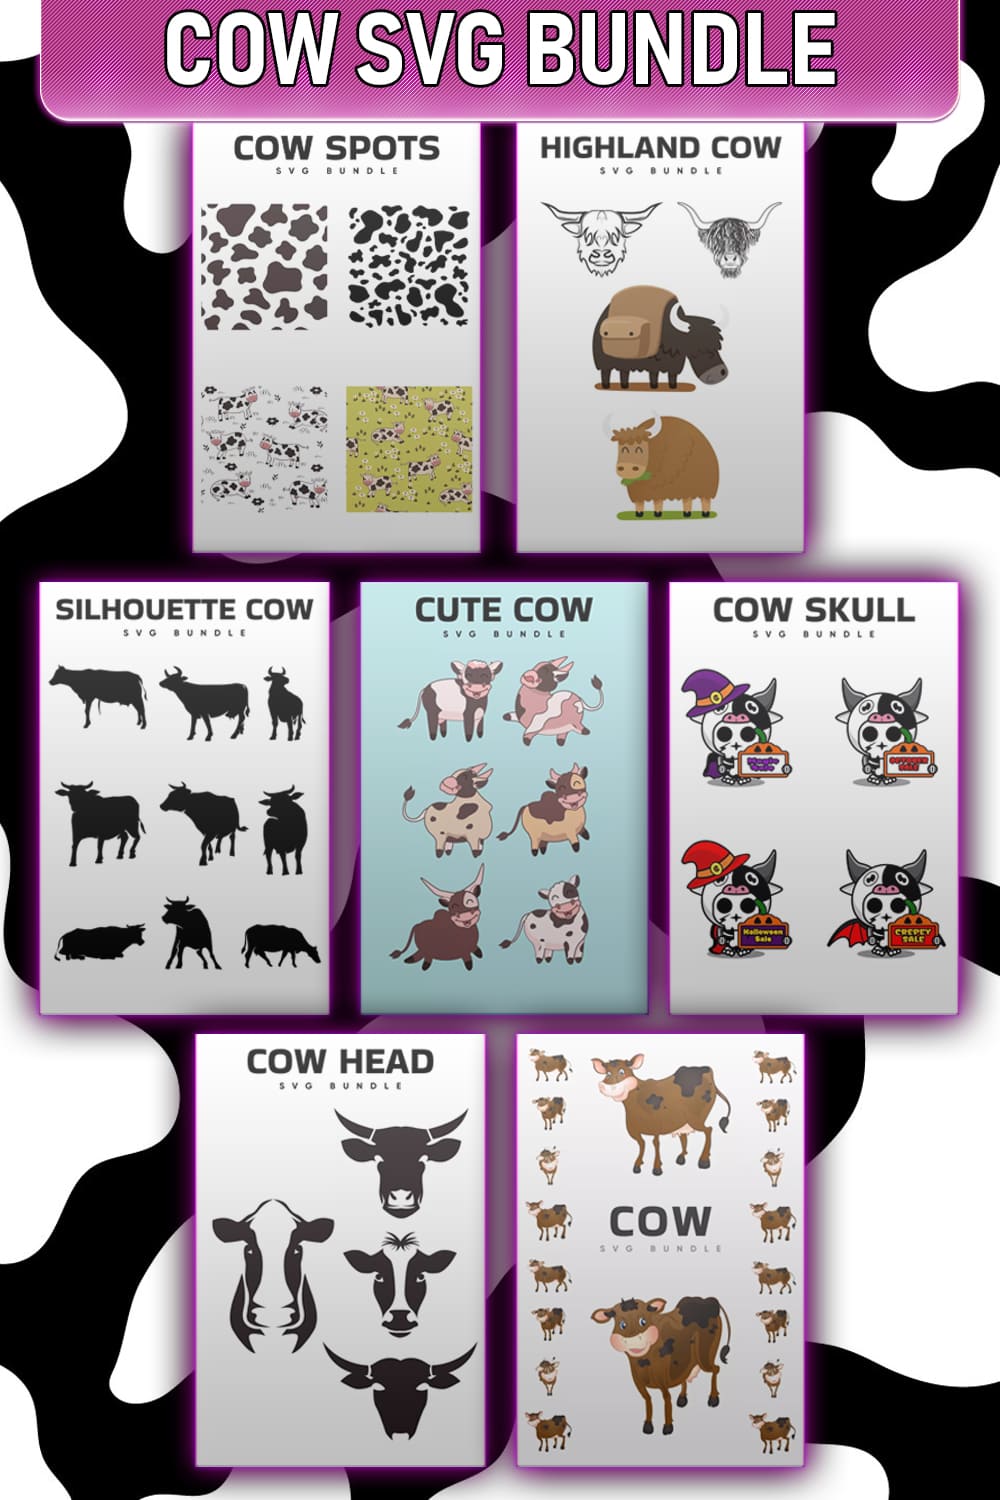 Massive Cow SVG Bundle - Pinterest.